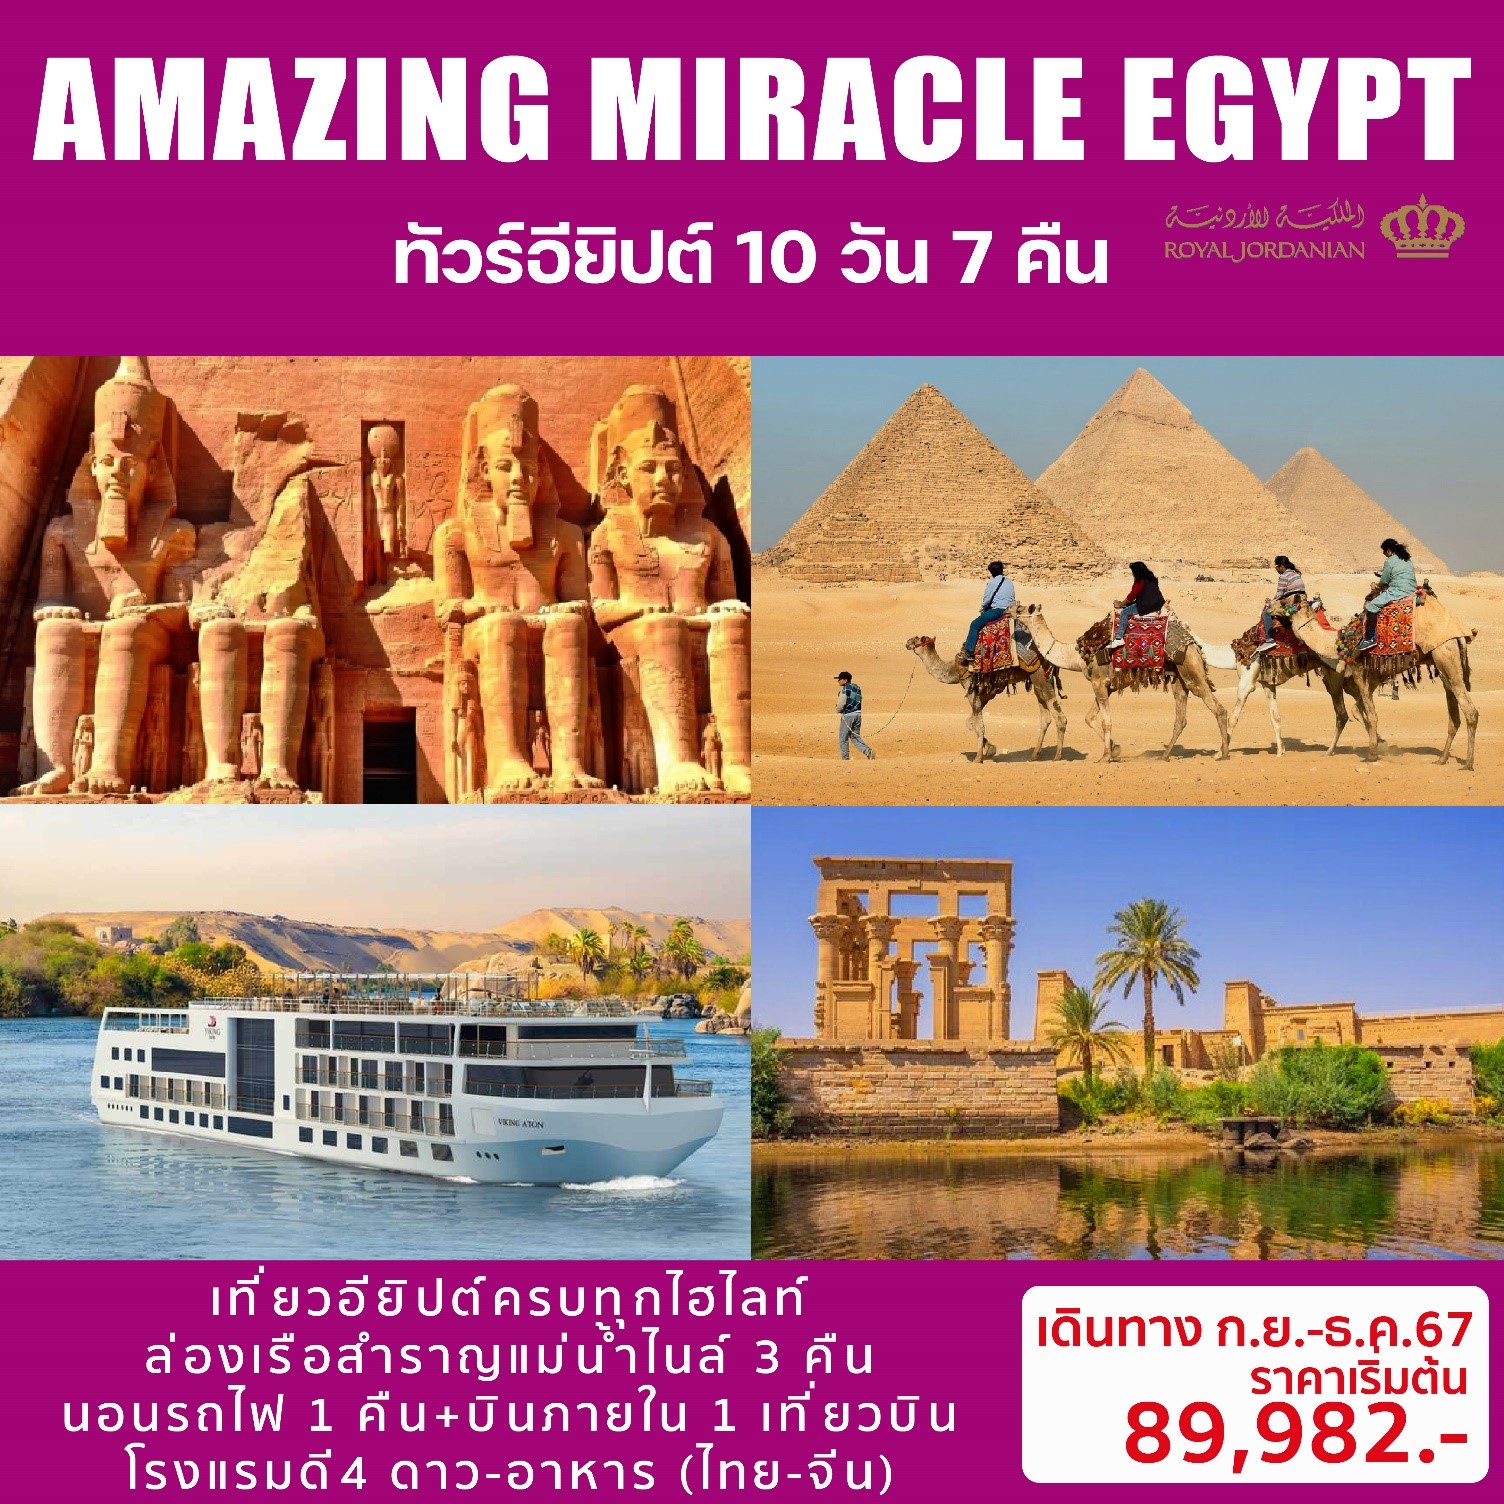 AMAZING-MIRACLE-EGYPT-ทัวร์อียิปต์-10วัน7คืน